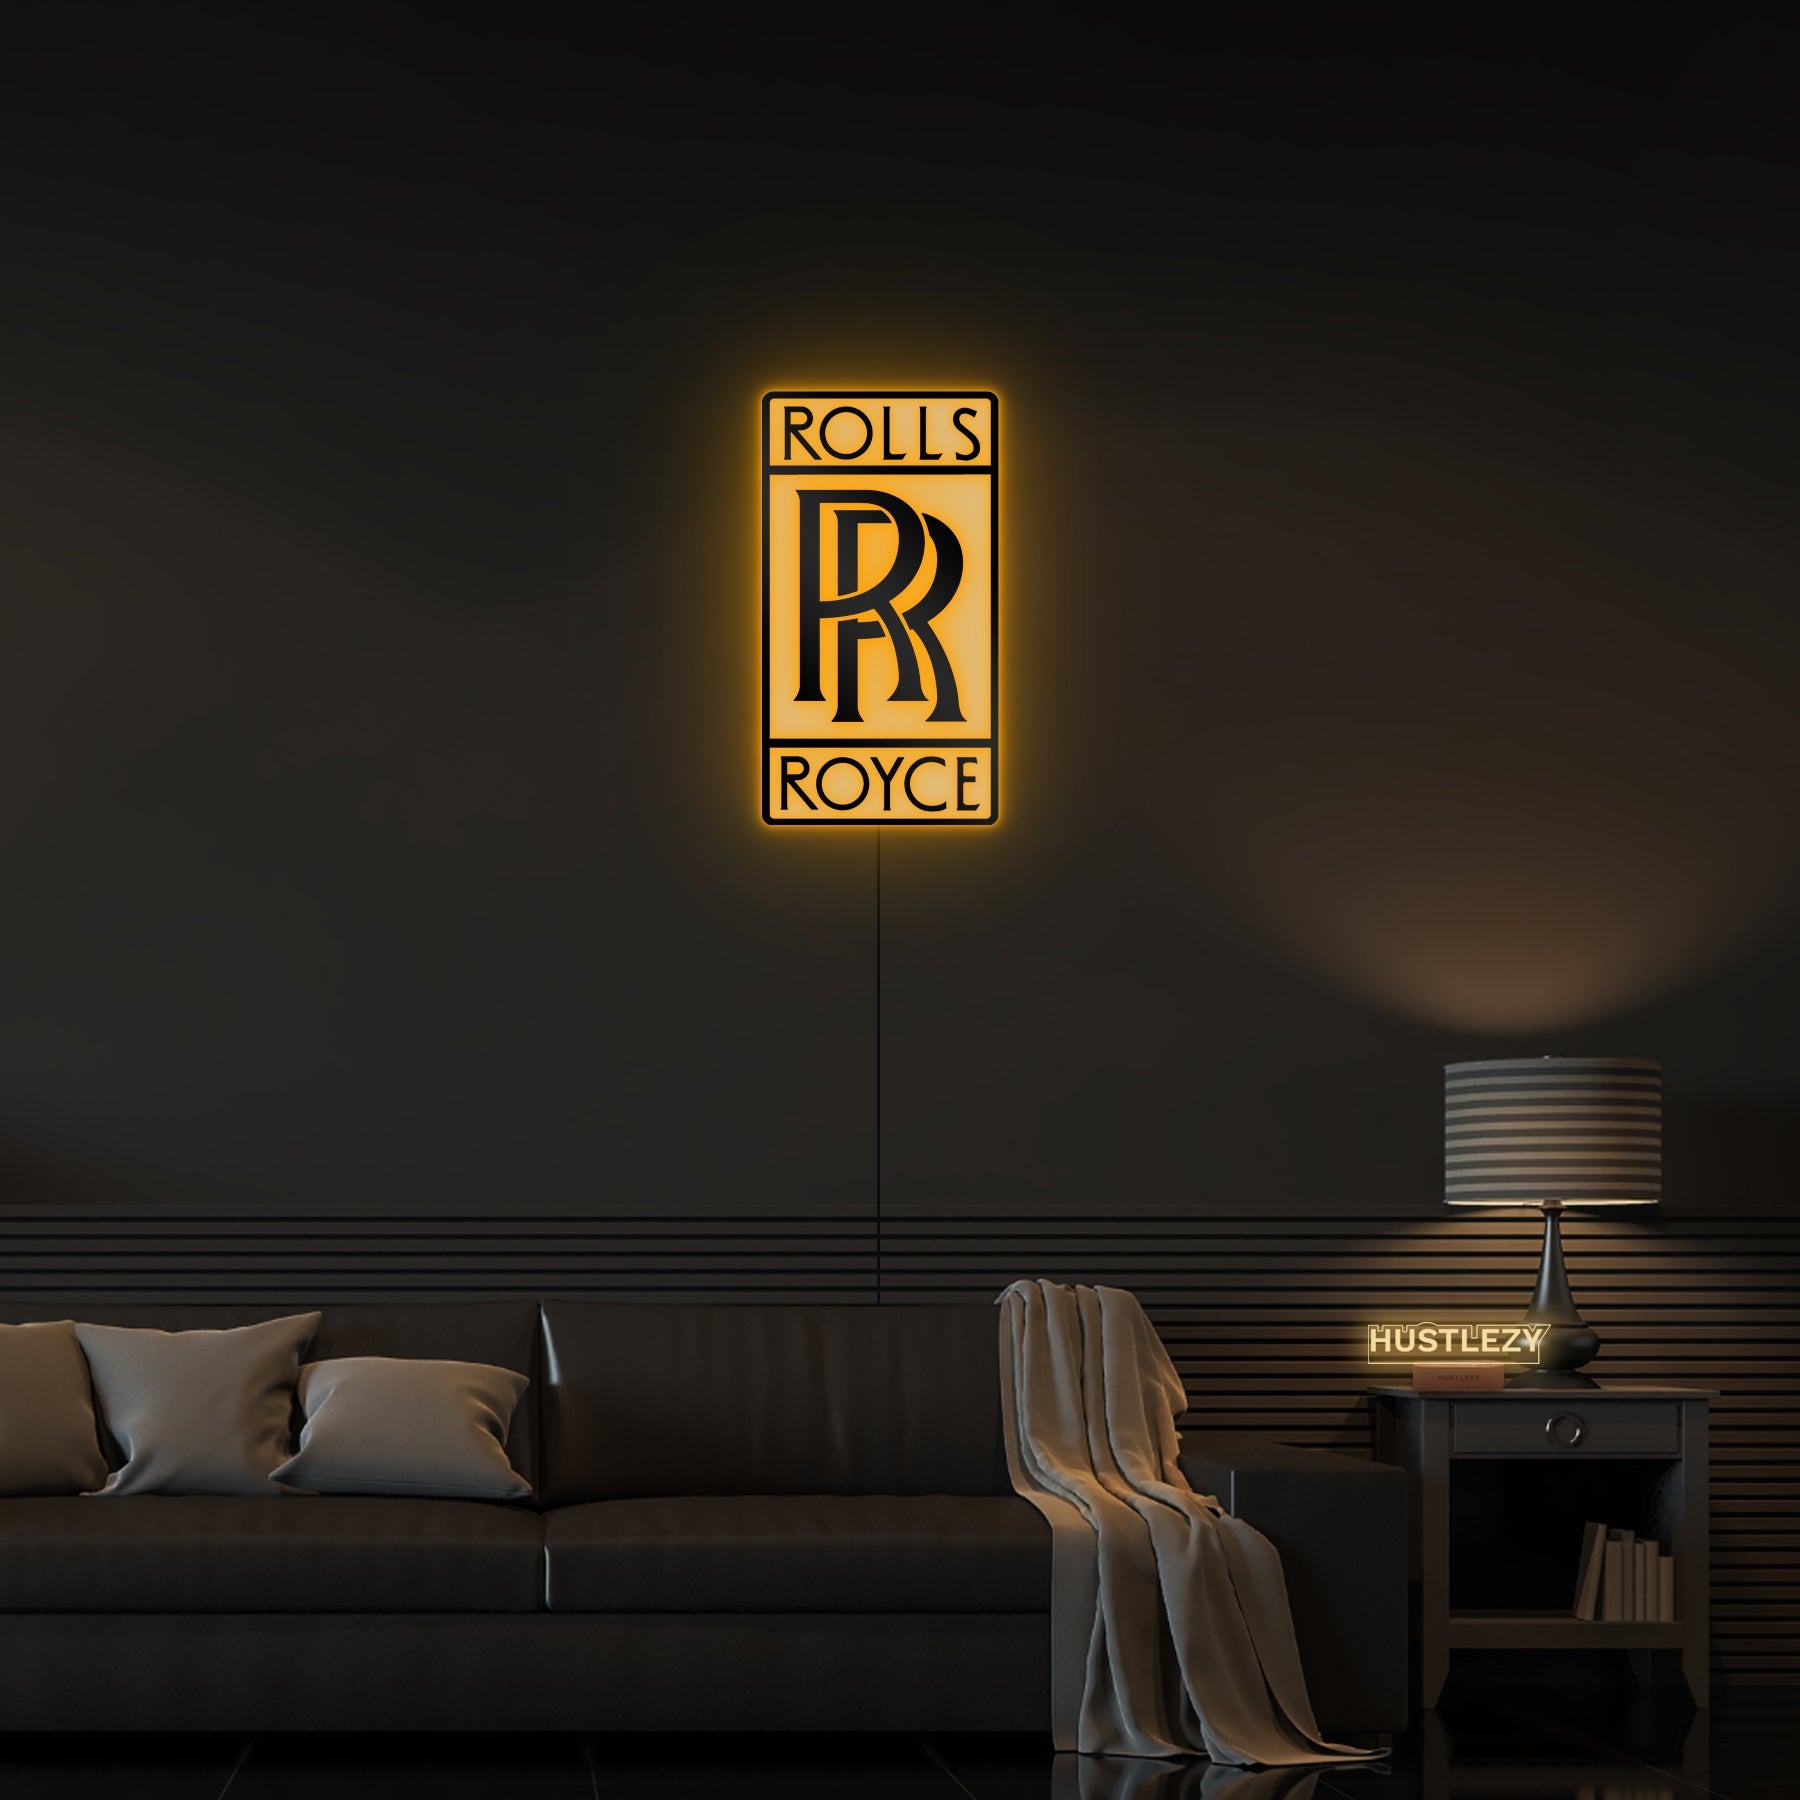 HD rolls royce logo wallpapers | Peakpx